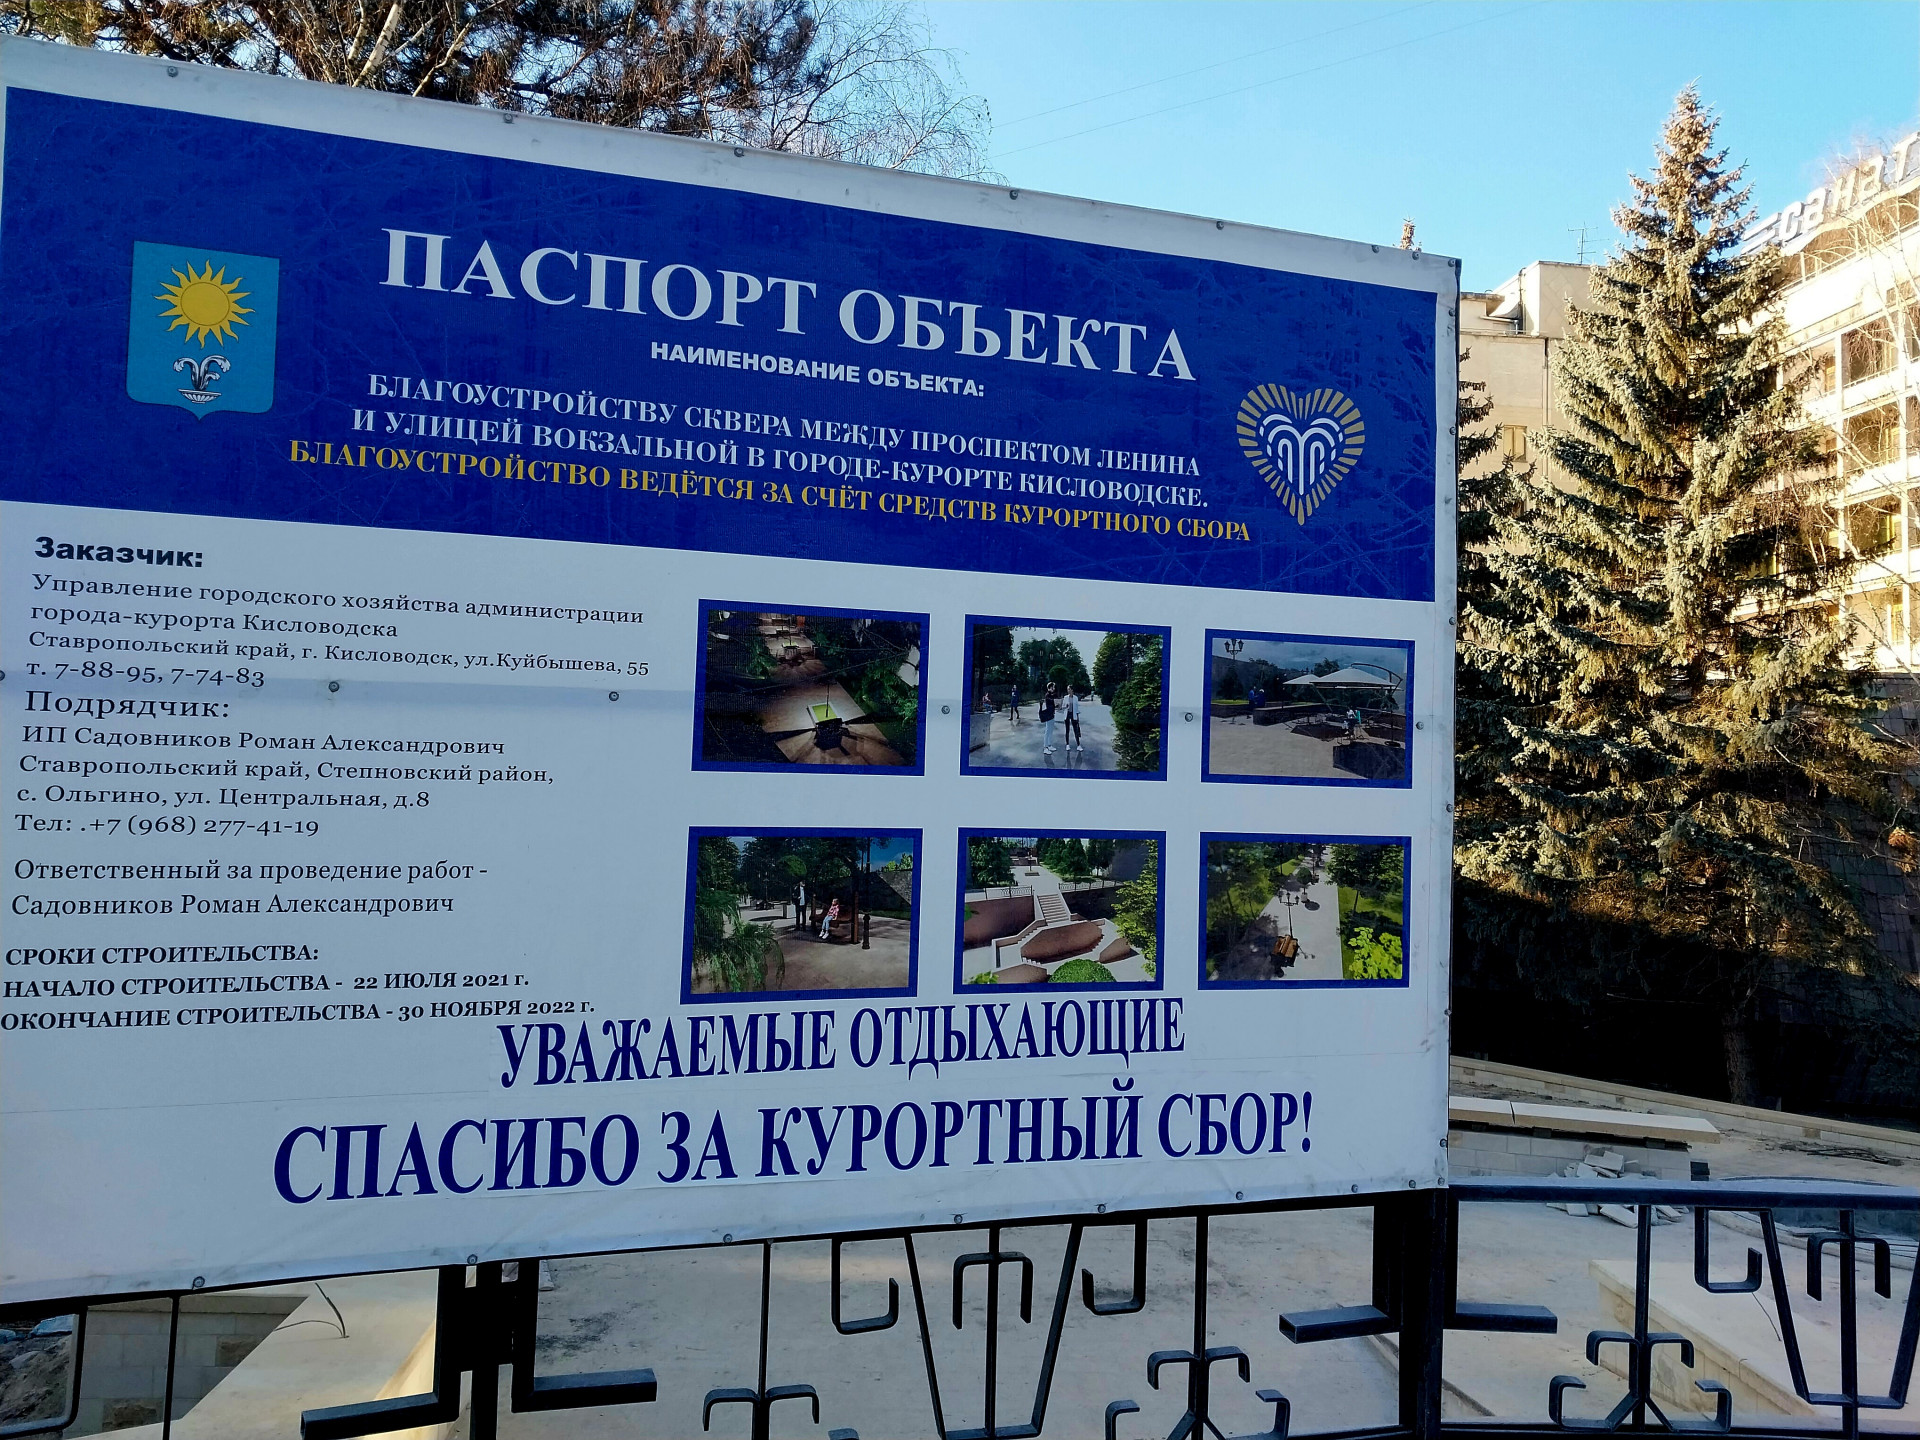 На 7, 5% перевыполнен план по курортному сбору с начала года в Кисловодске